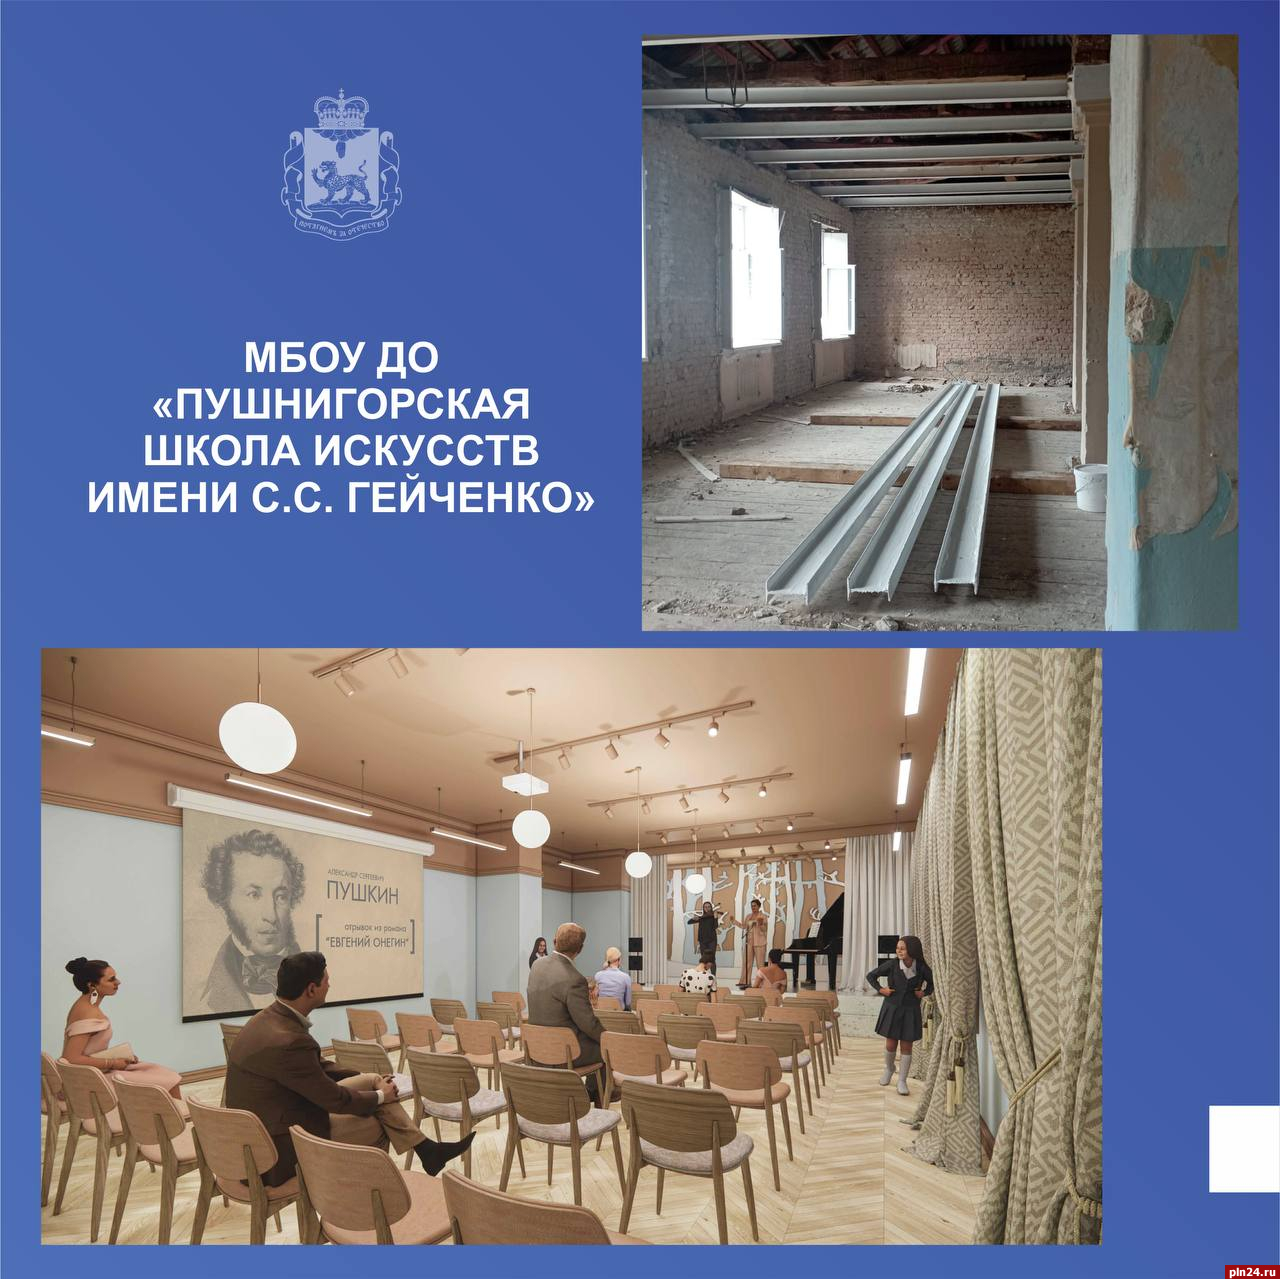 Ремонт культурно-досугового центра и школы искусств продолжается в Пушкиногорском районе